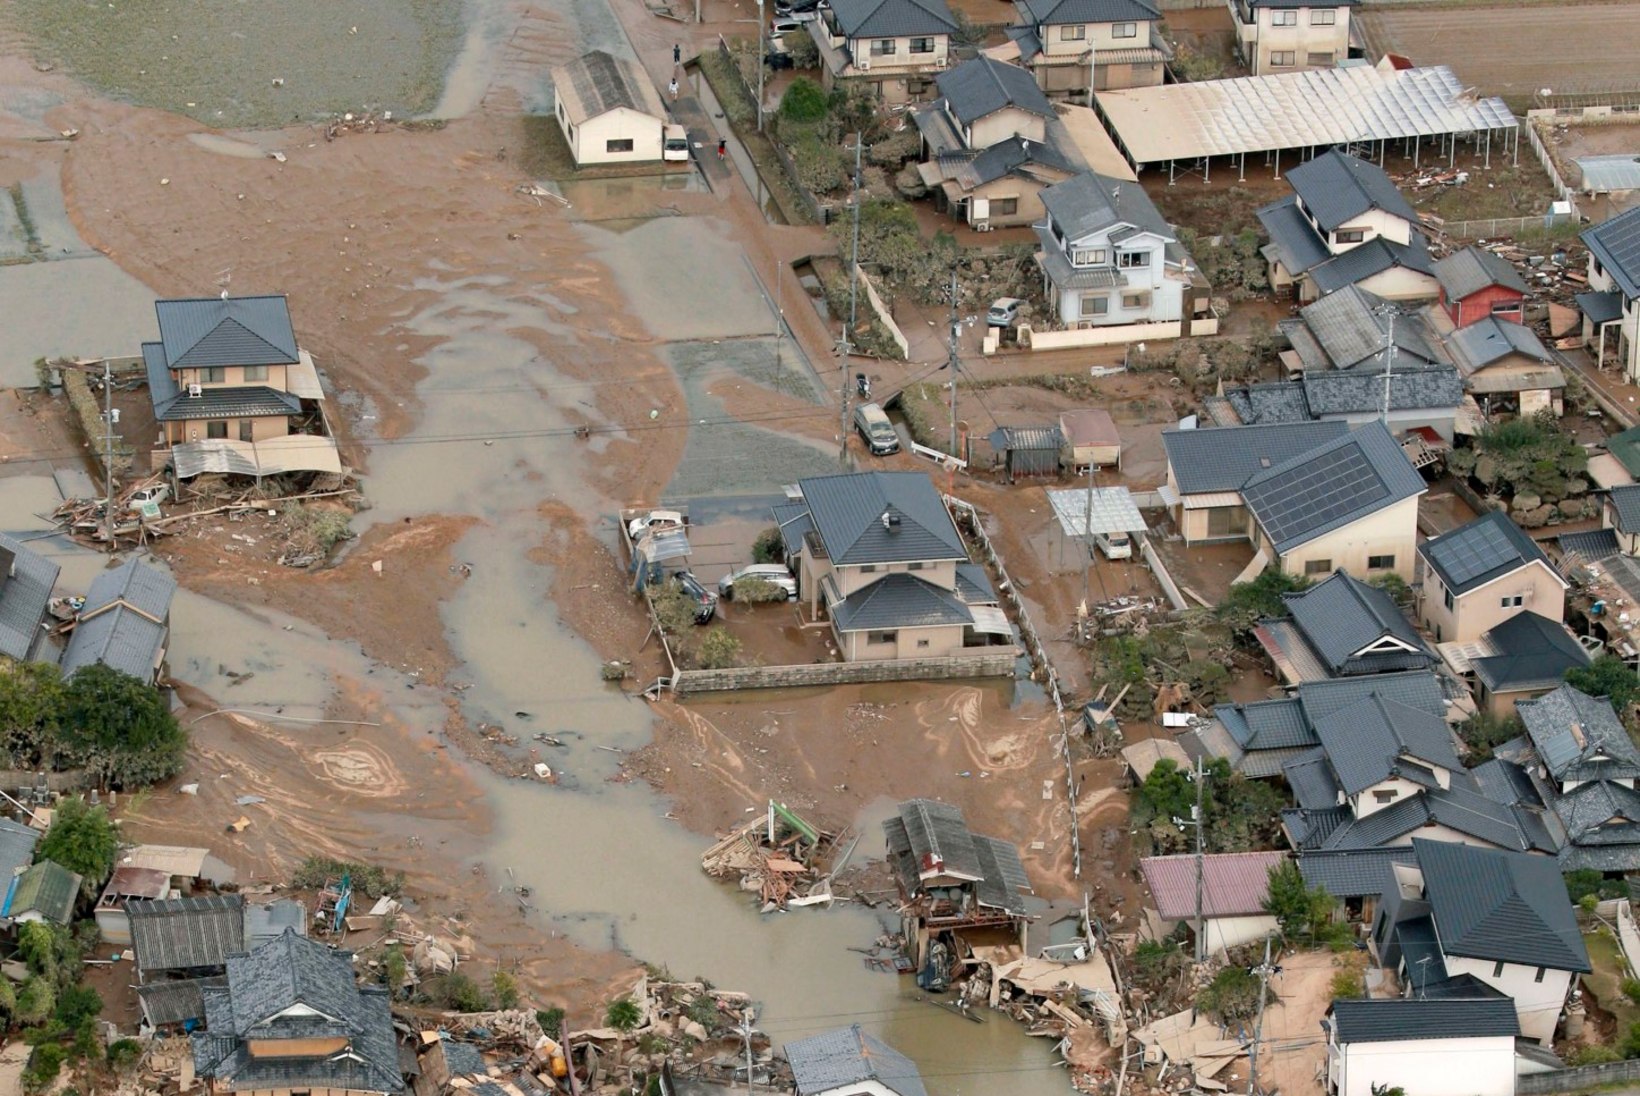 Jaapanit tabanud üleujutustes on hukkunud vähemalt 100 inimest